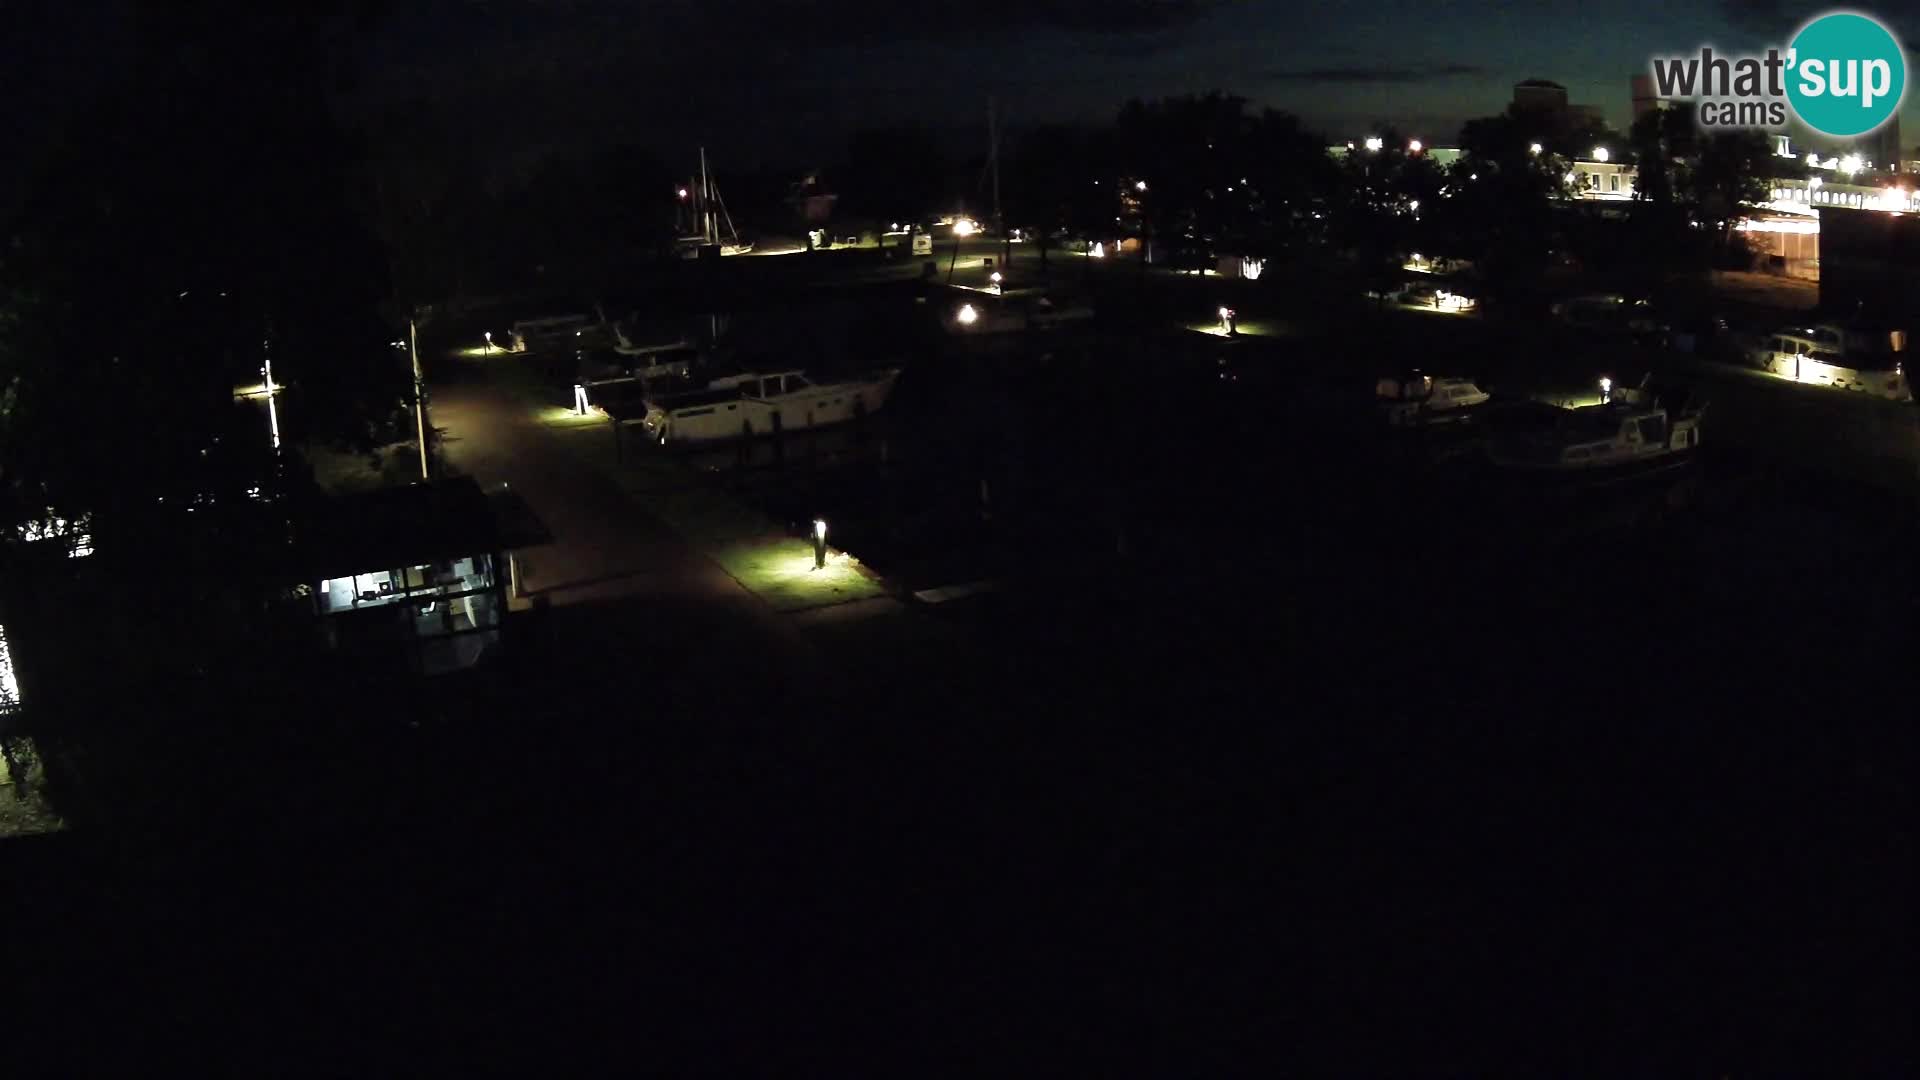 Le port de Joure webcam – vue du moulin à vent